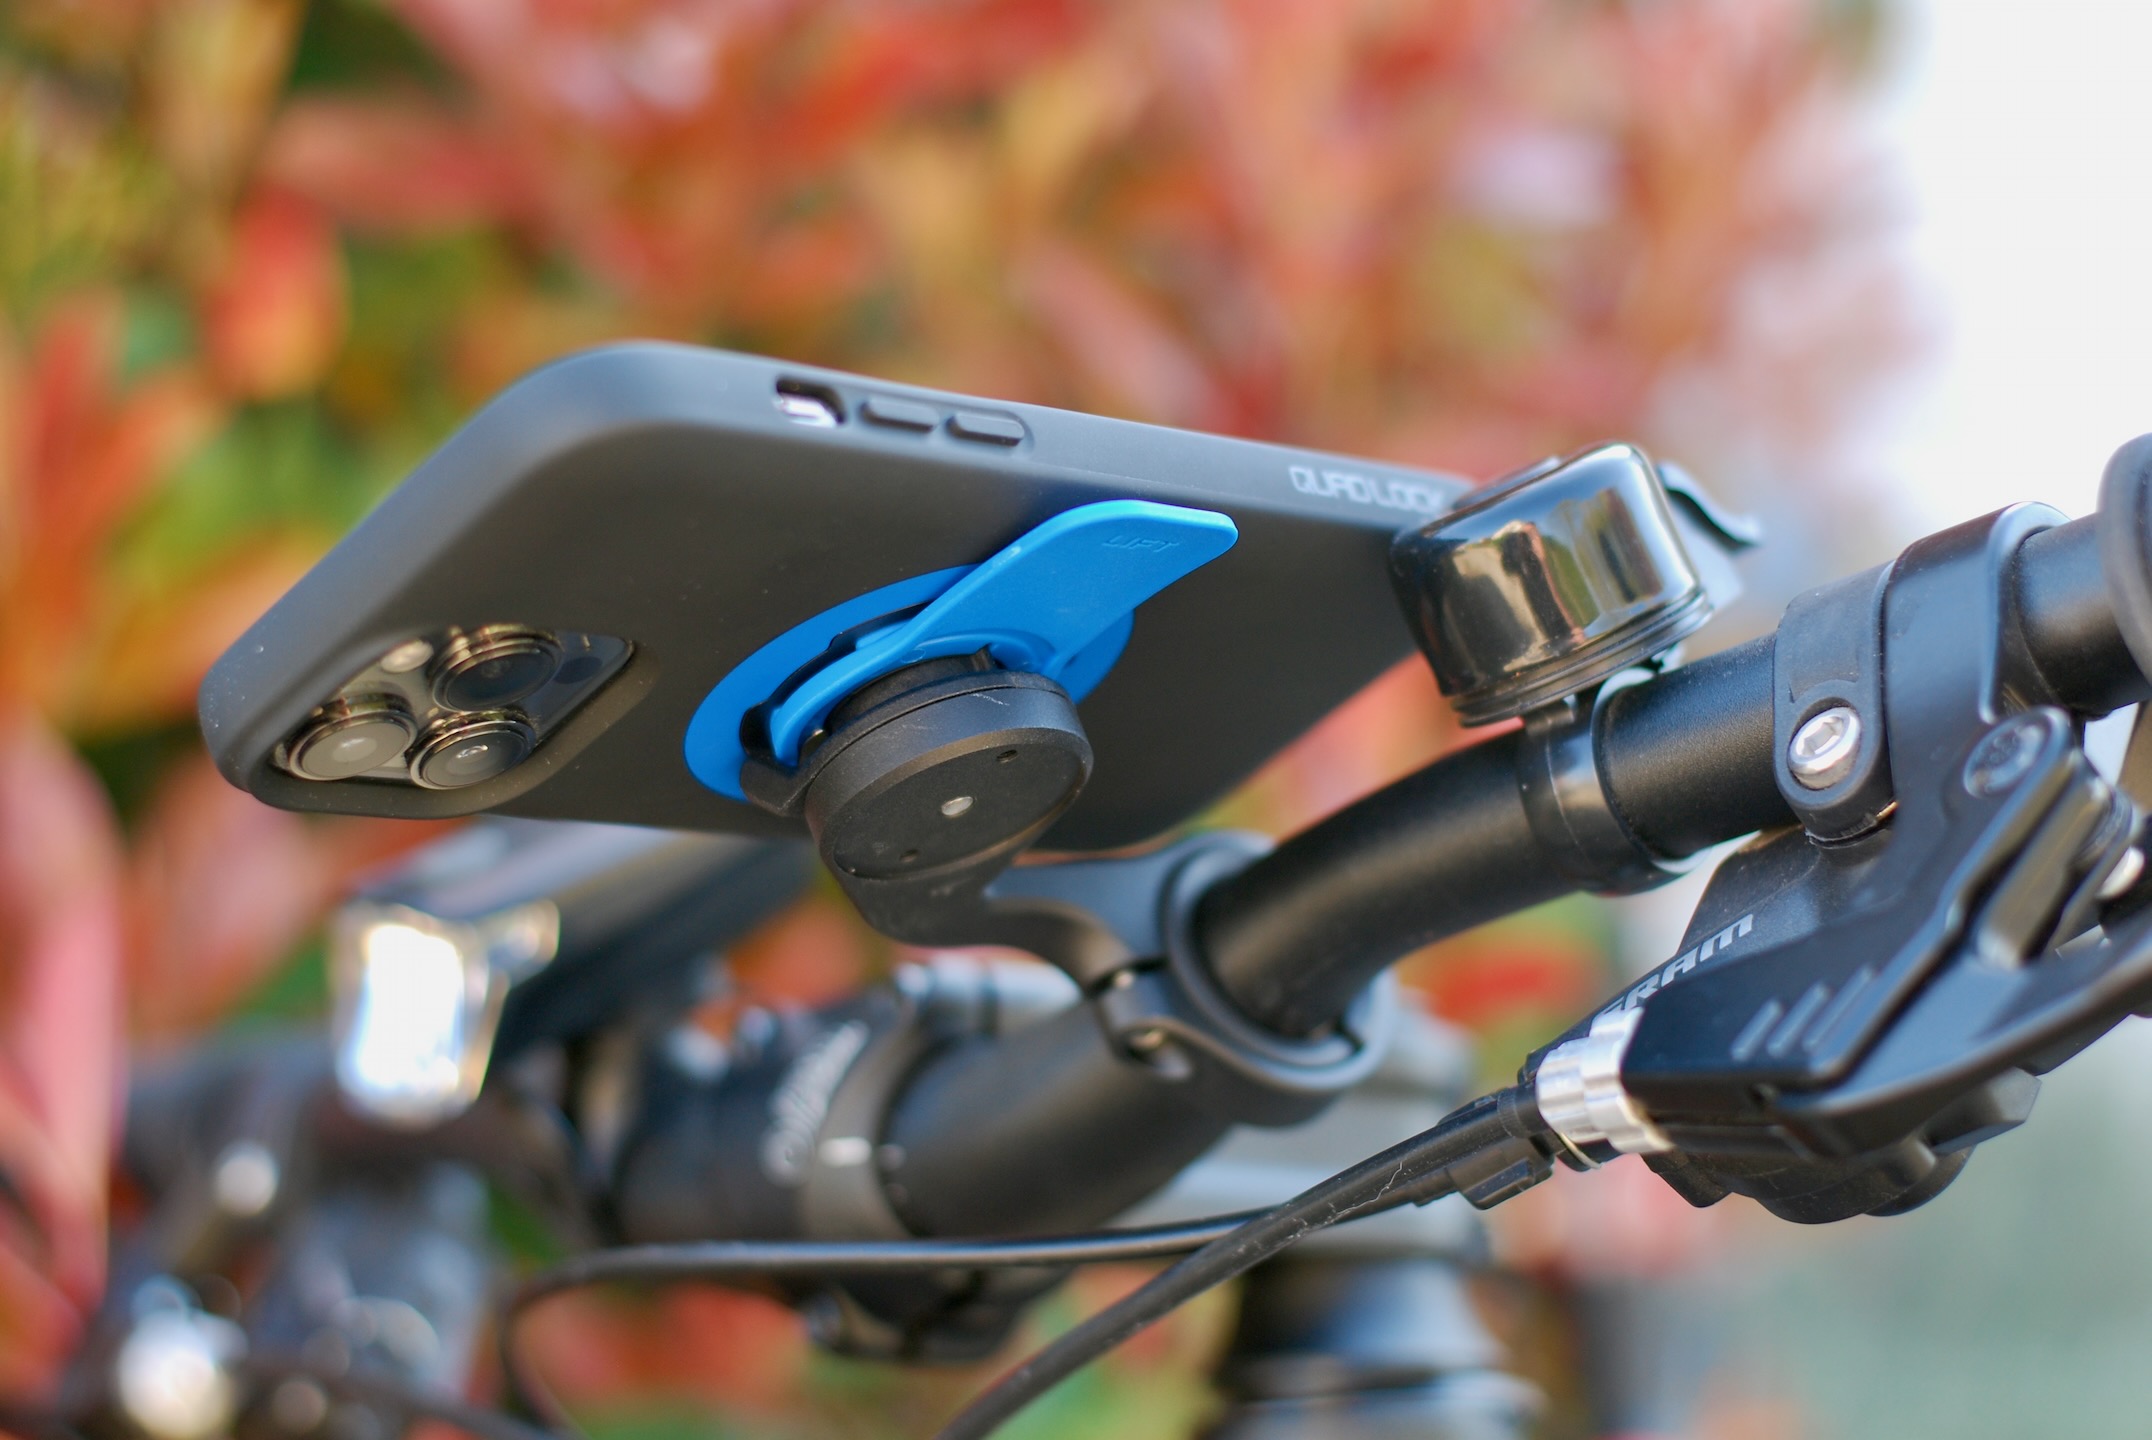 Support téléphone pour vélo et trottinette électrique – City Rider